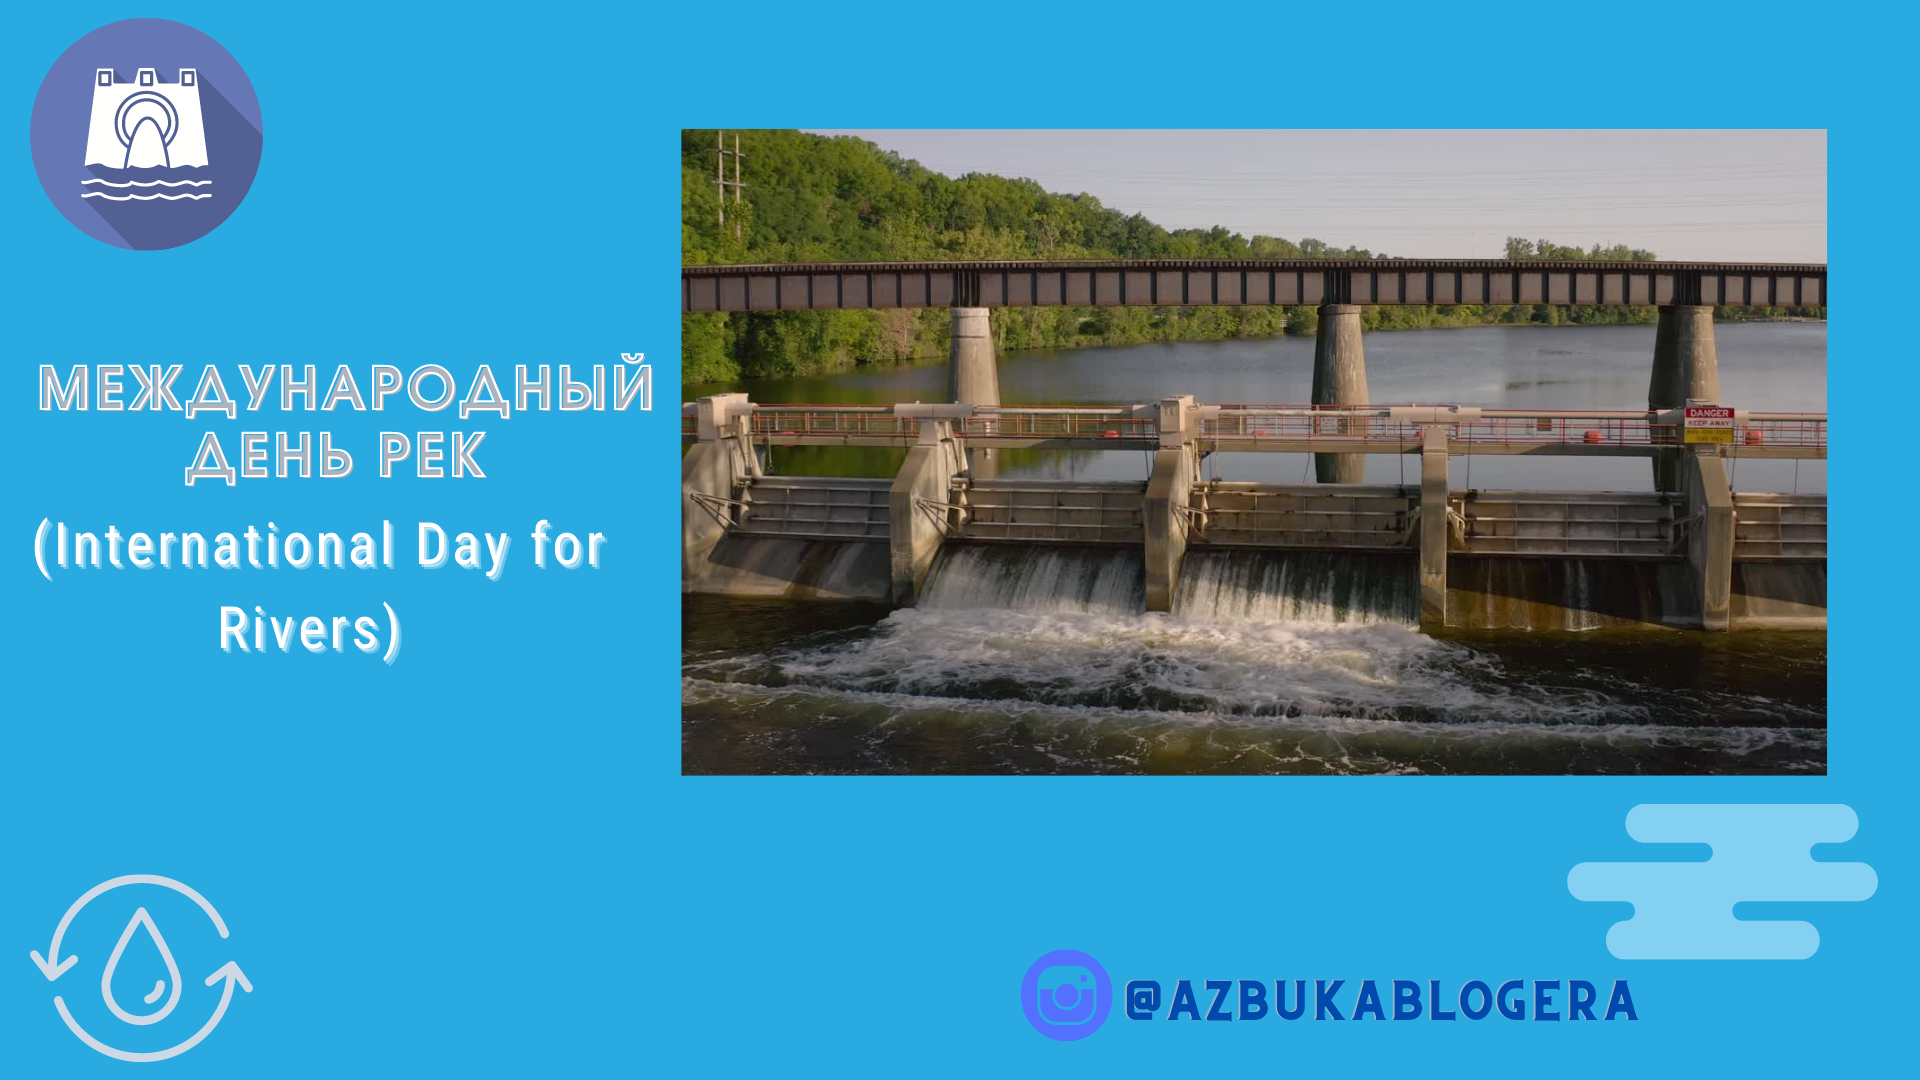 Всемирный день рек. Международный день рек (International Day for Rivers) Сырдарья.